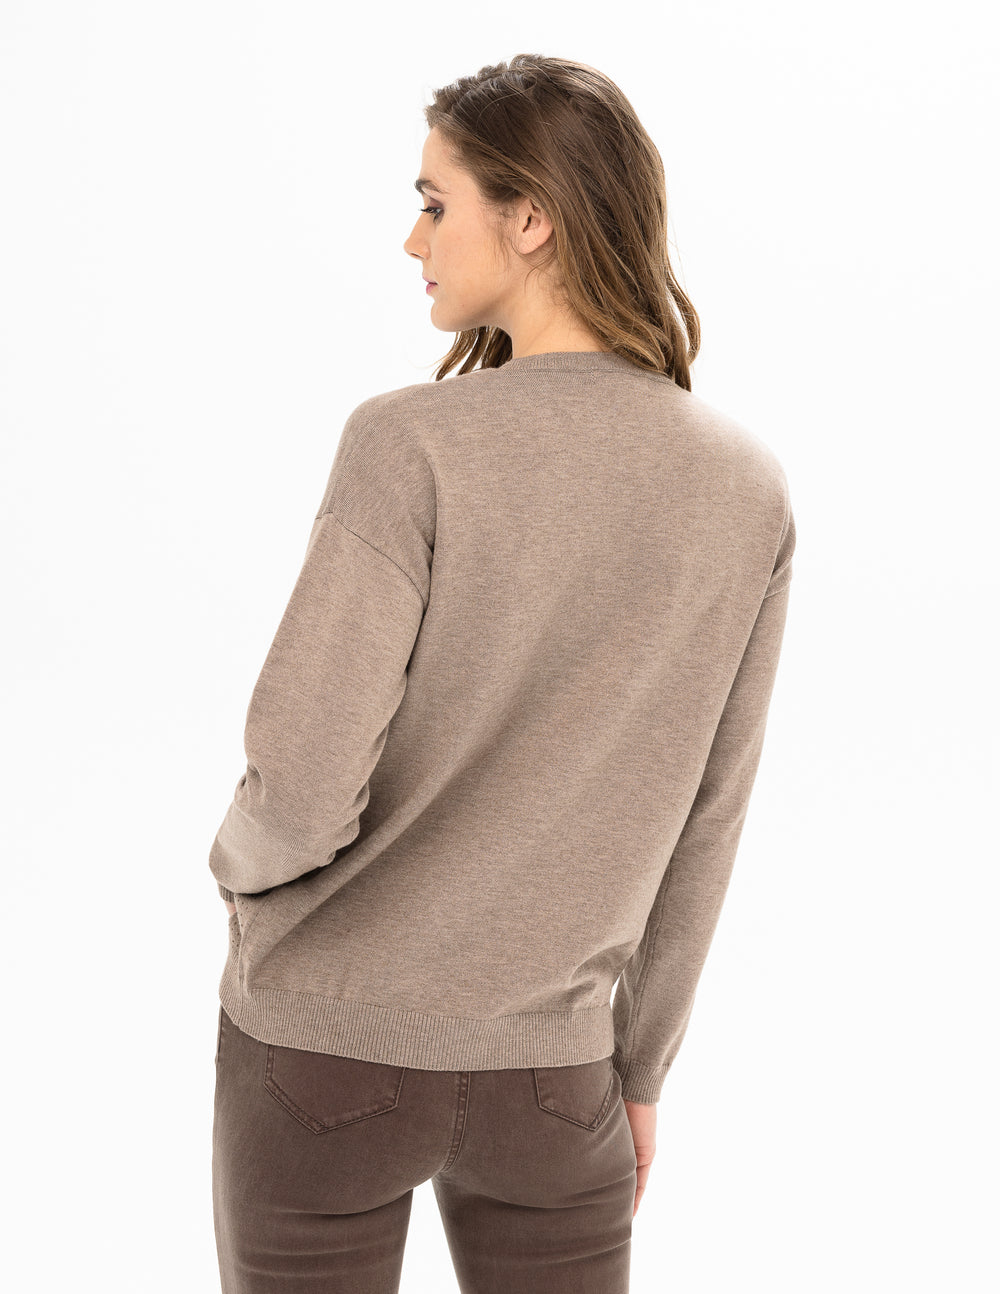 Renuar sweater 6871, sparkle crewneck (2 colors)